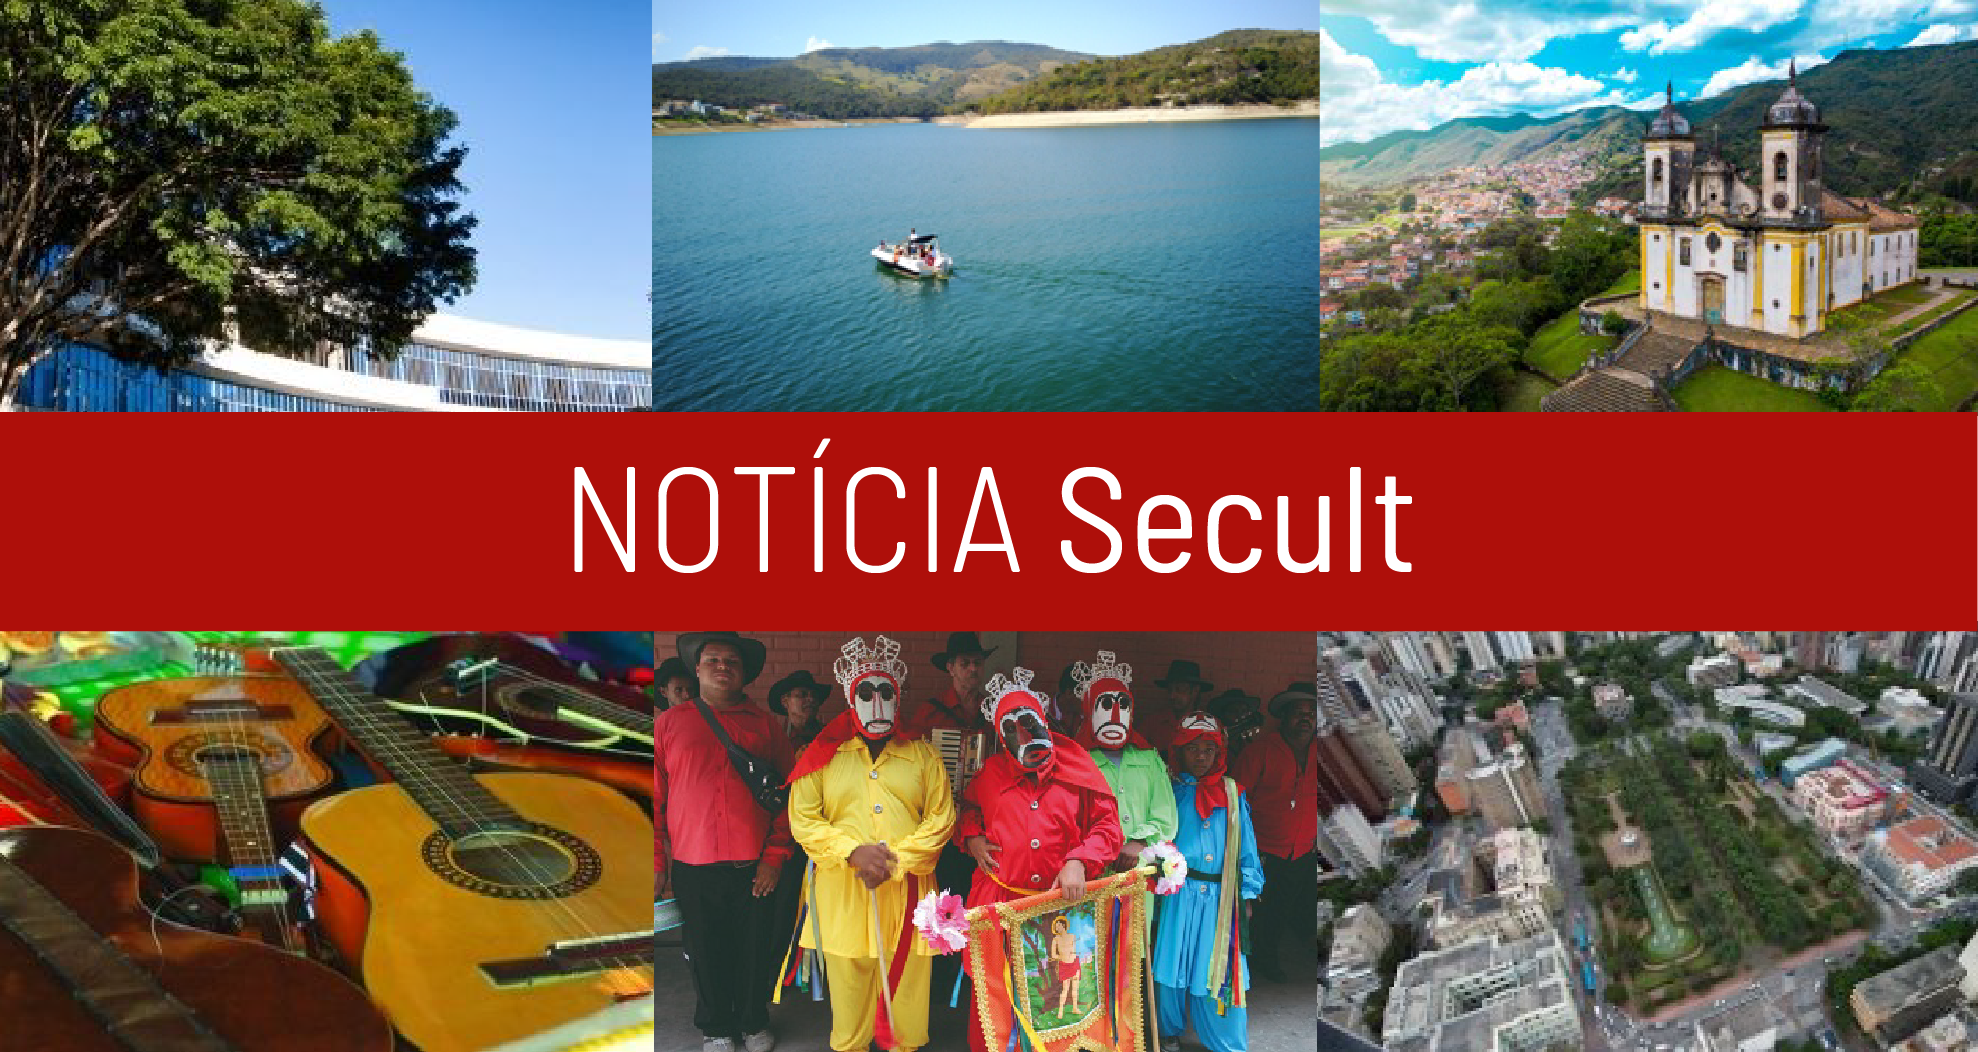 Secretaria de Estado de Cultura e Turismo - SECULT - Noticias